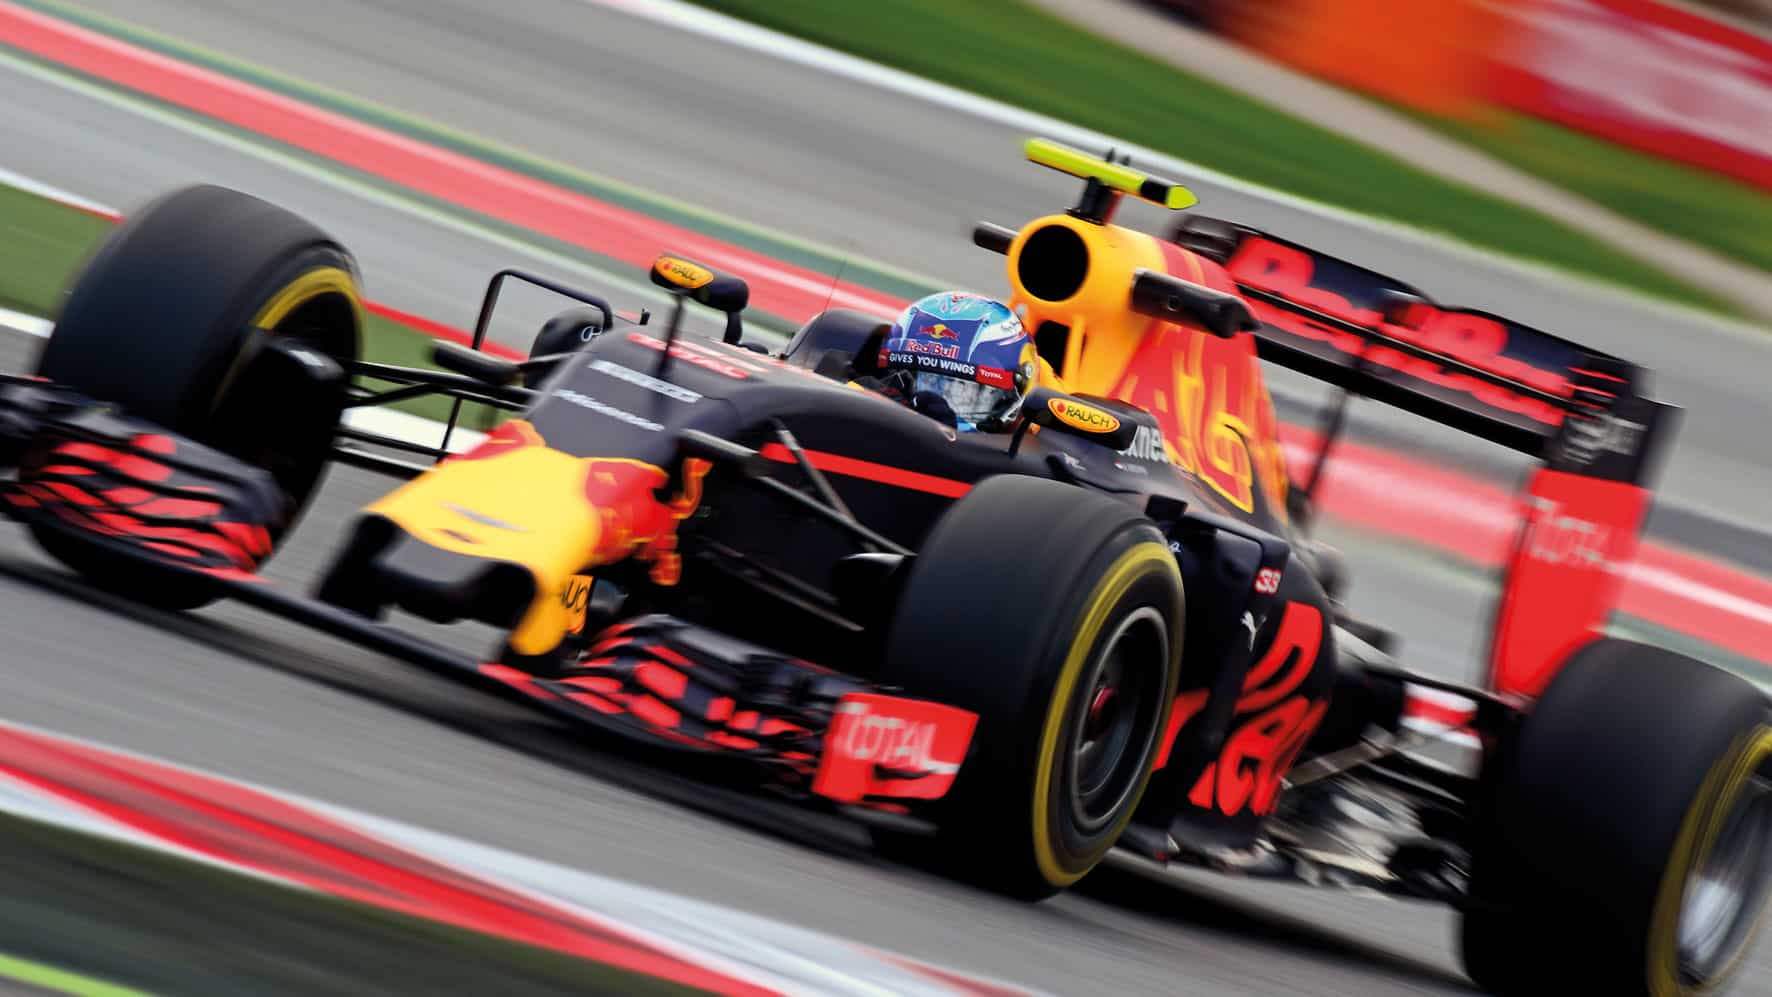 Max Verstappen in F1 debut